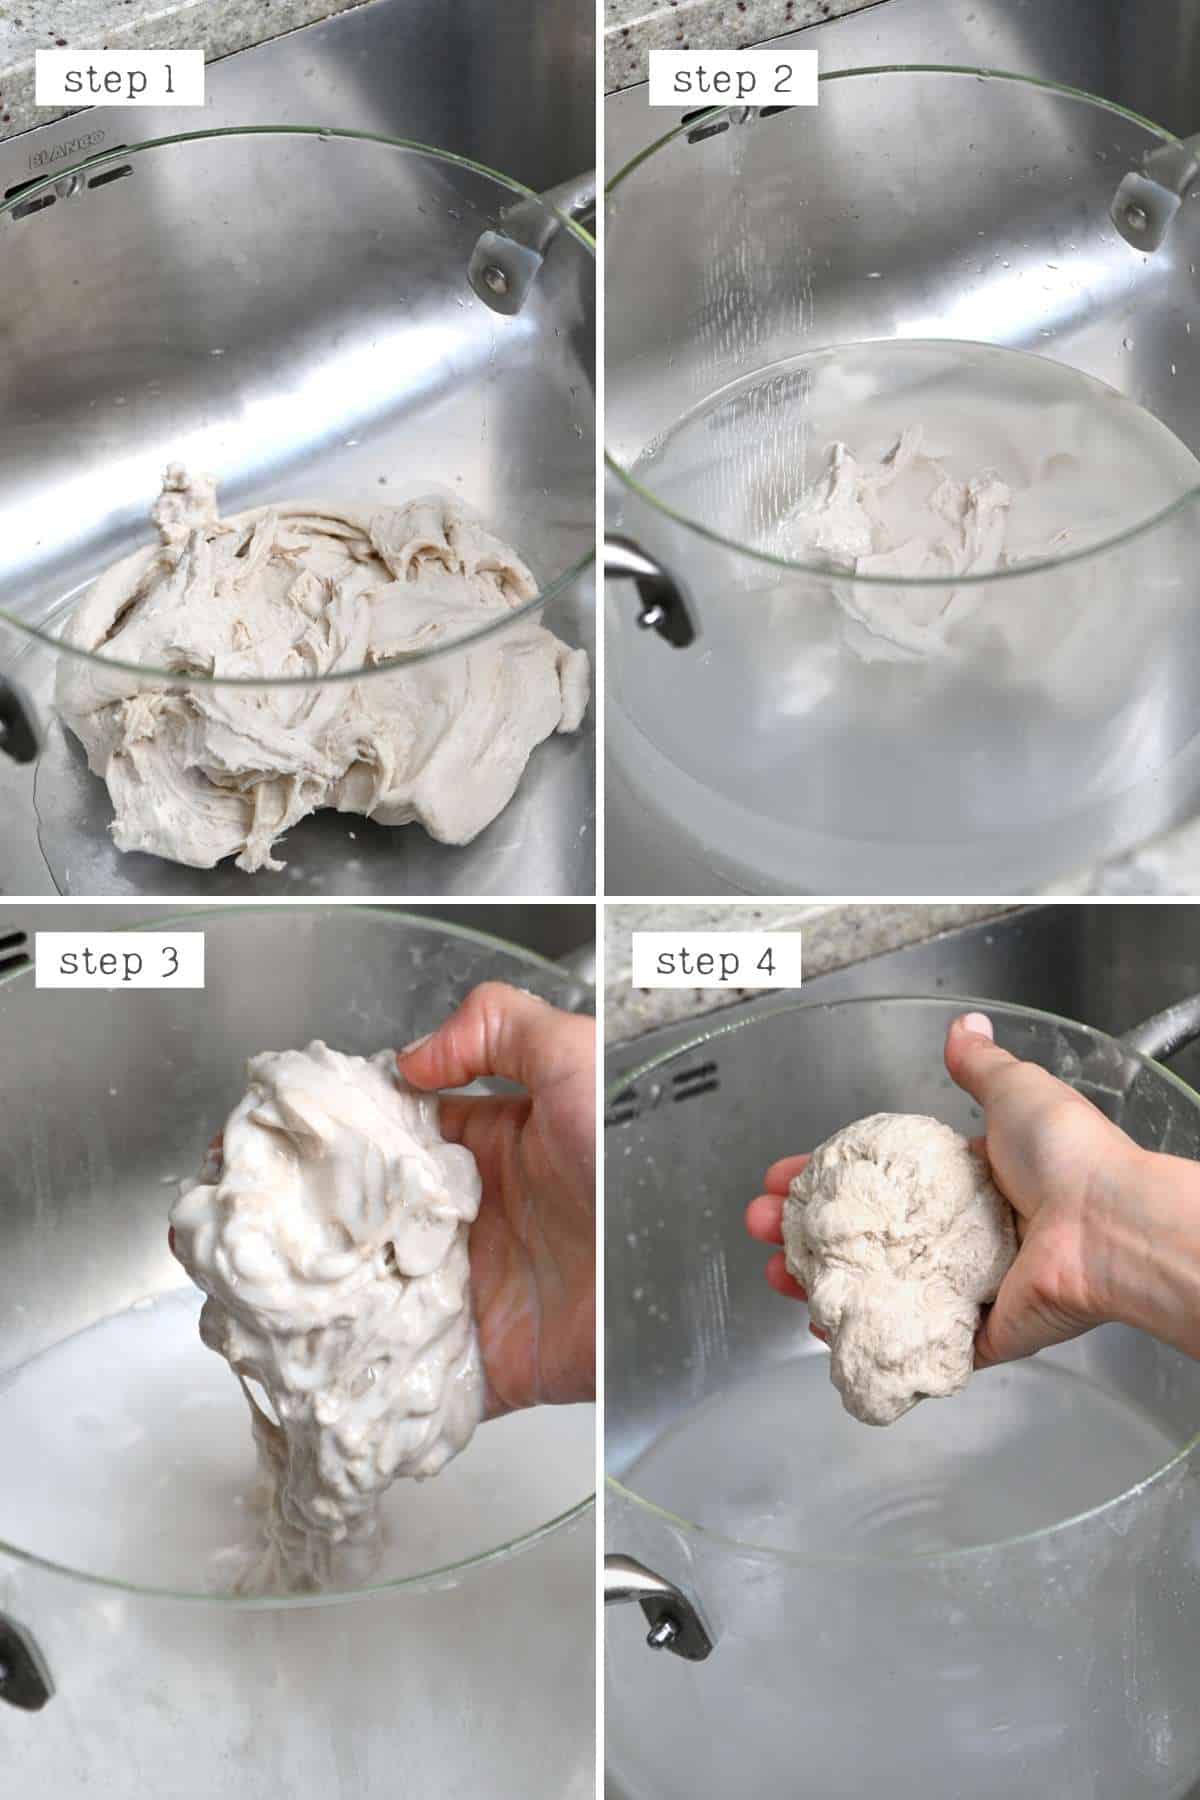 Steps for rinsing flour dough